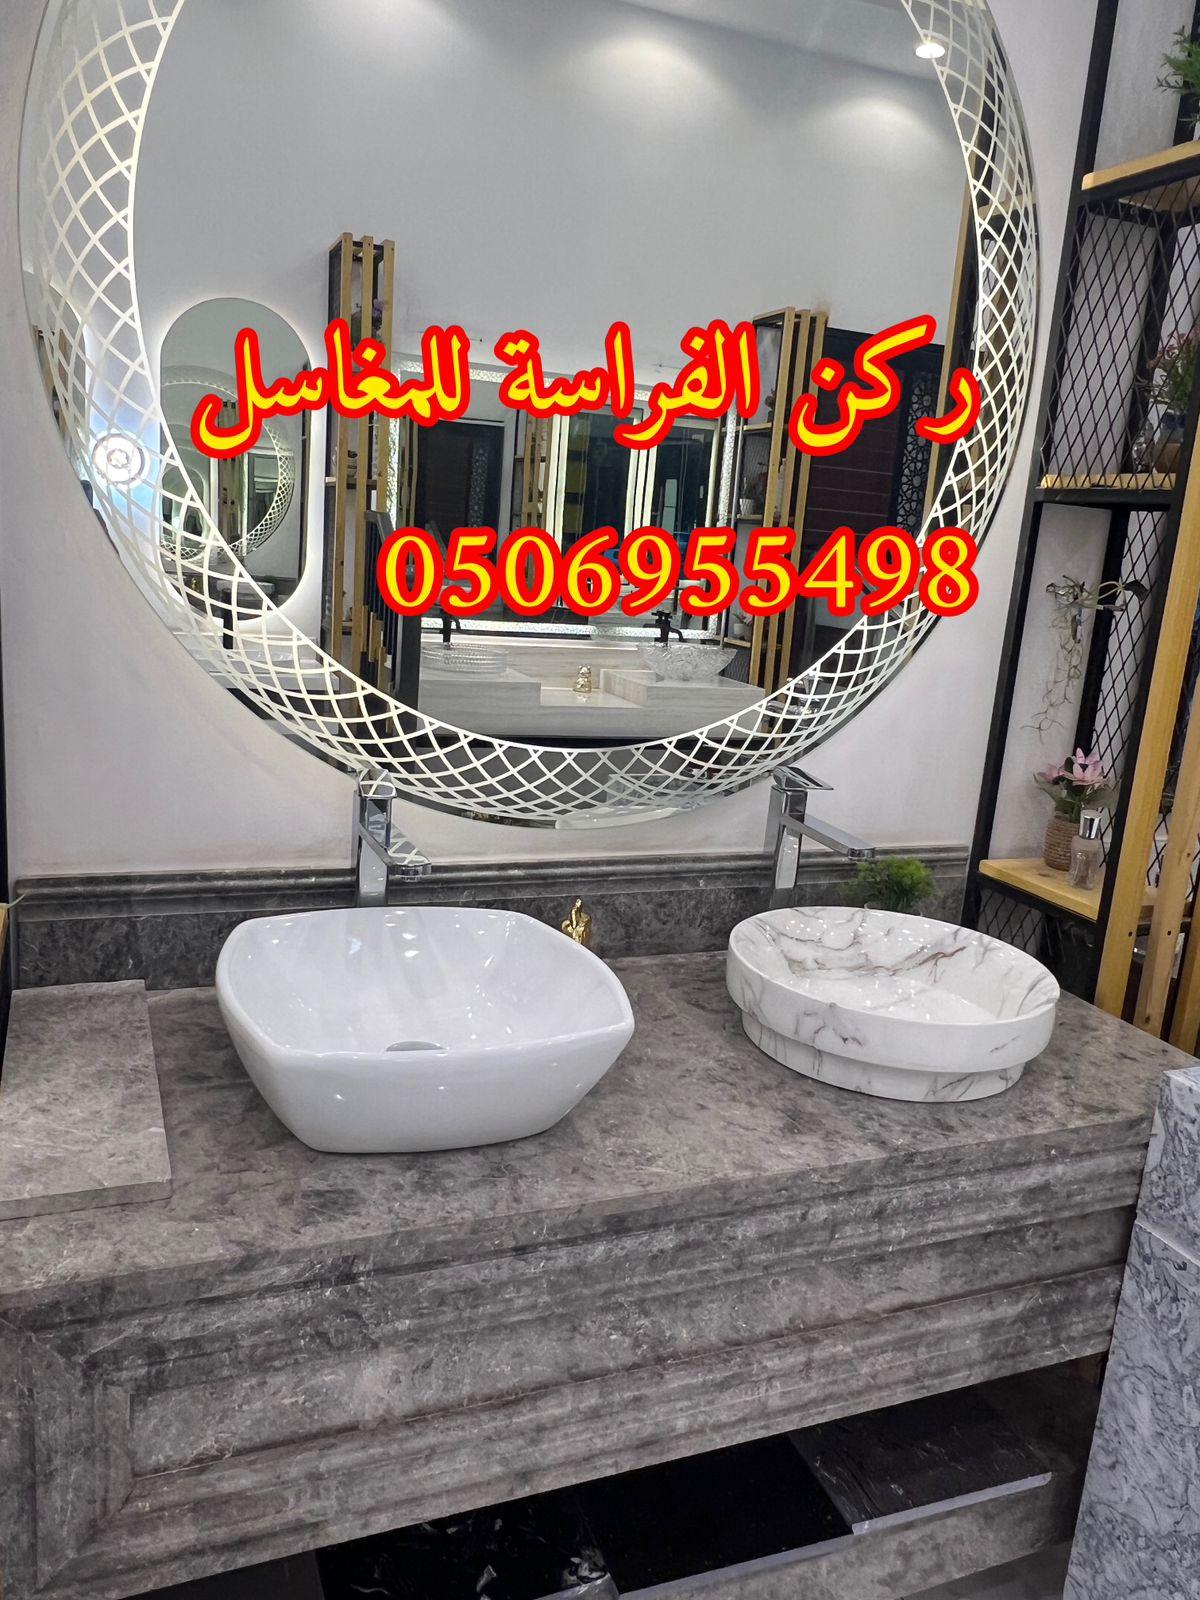 اشكال مغاسل رخام حديثة في الرياض,0506955498 391858653